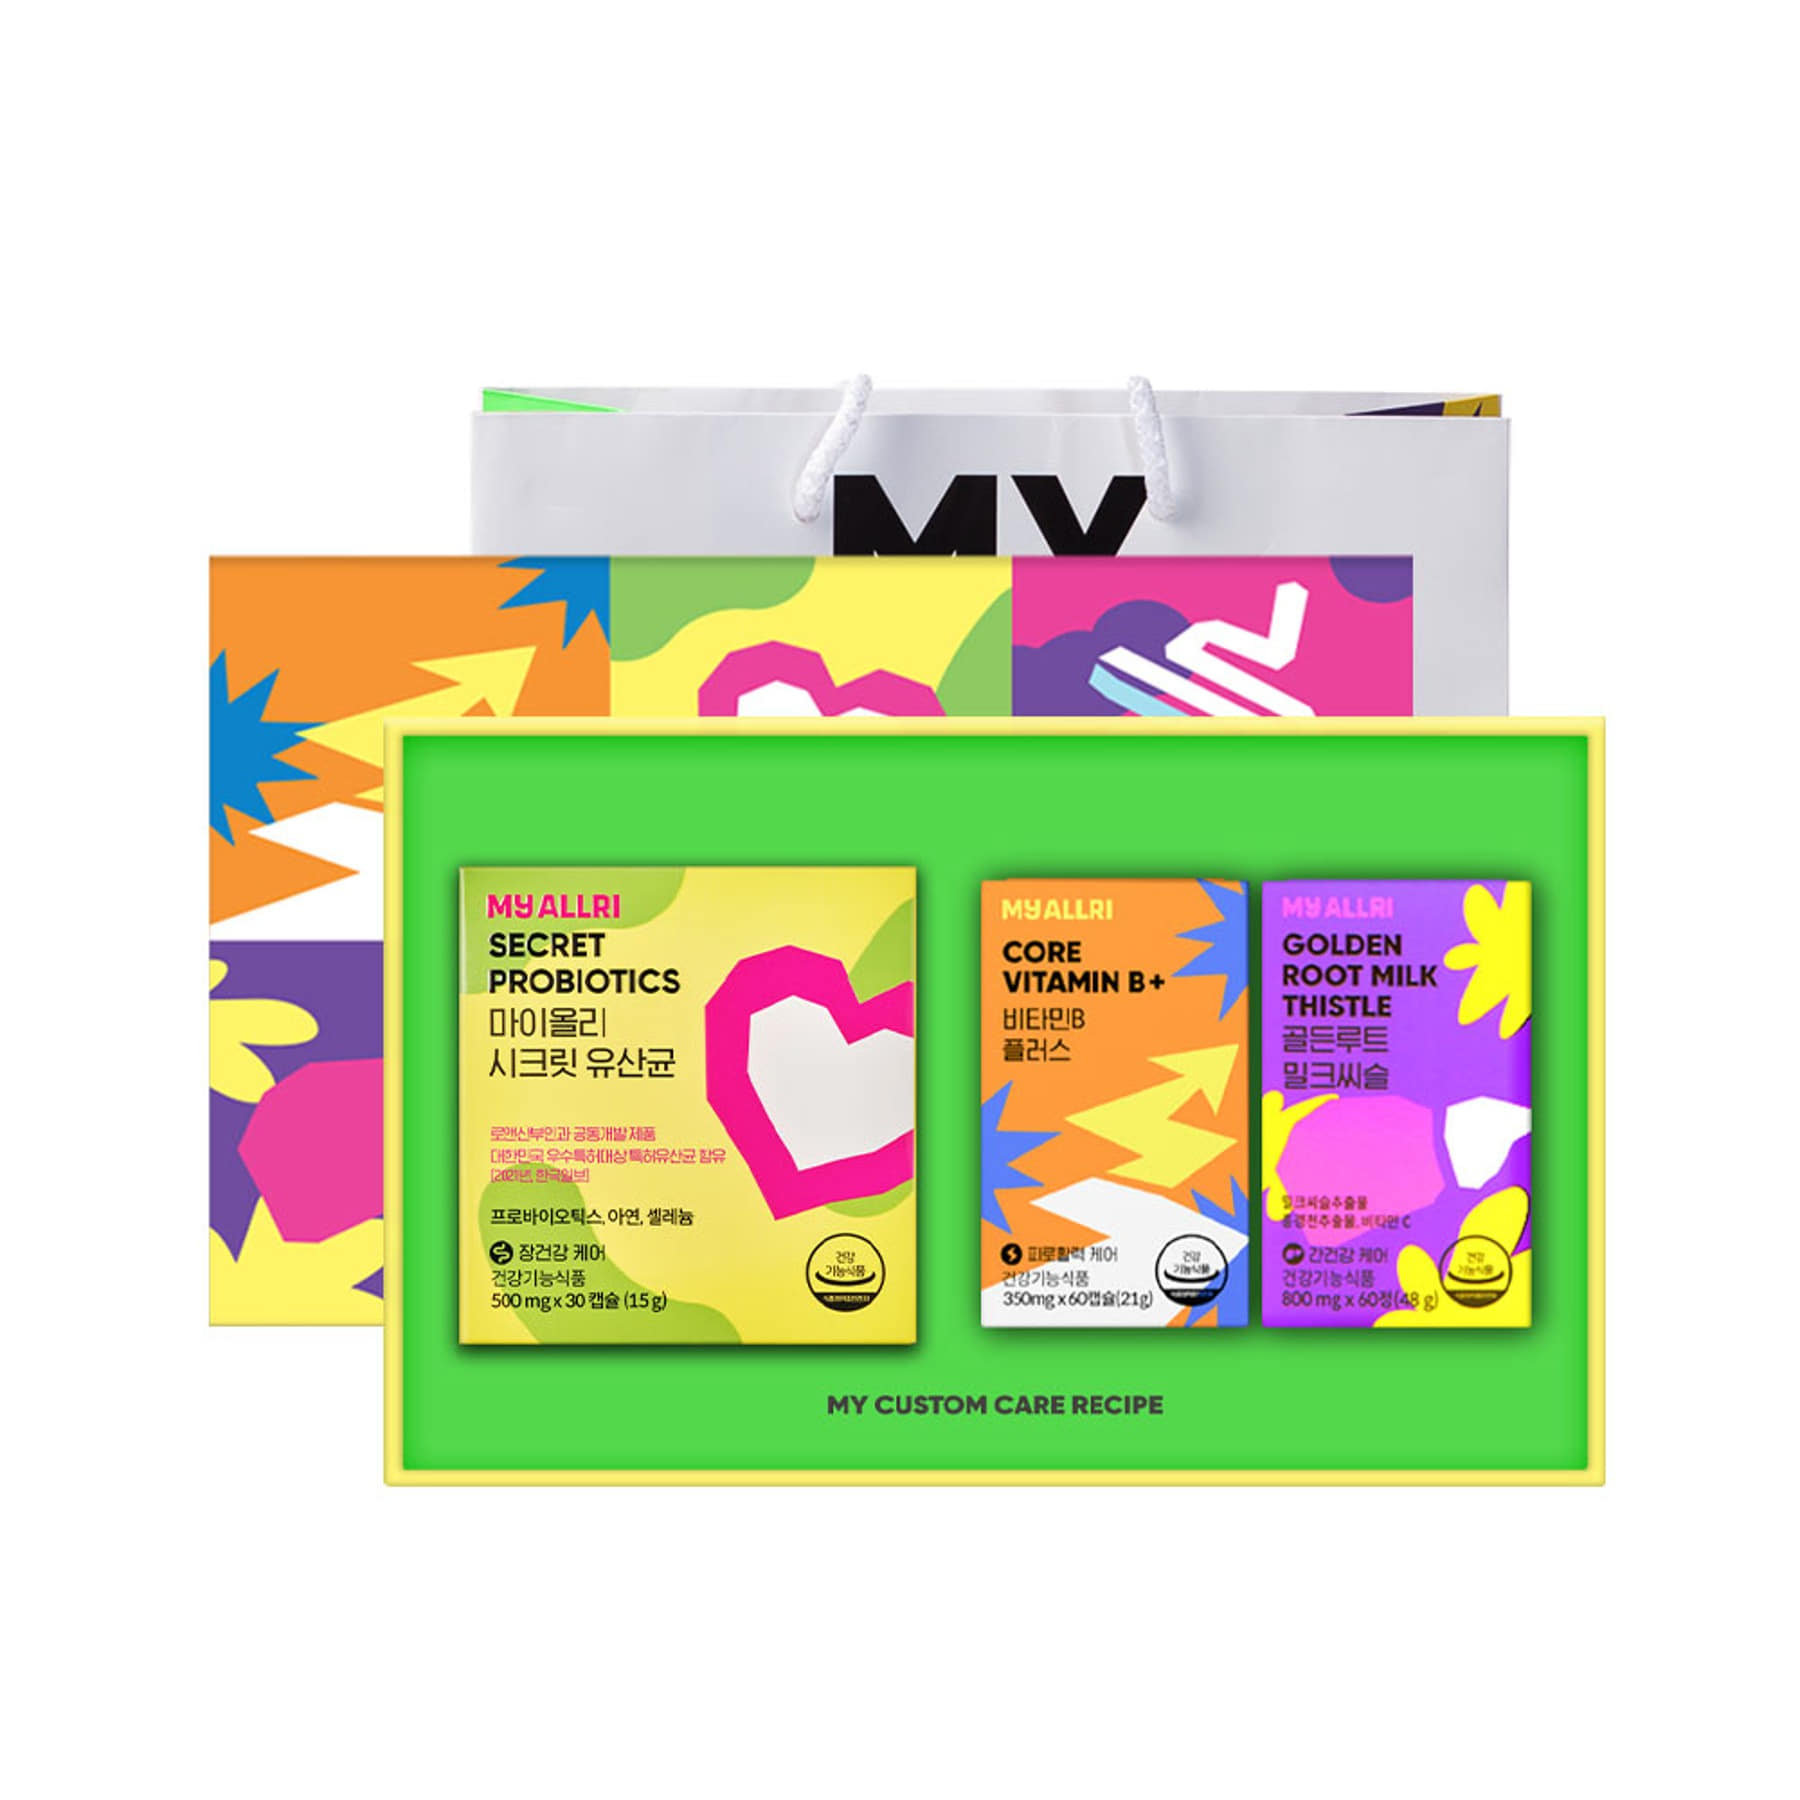 両親の健康フルBセット（シークレット乳酸菌+ミルクシスル+ビタミンB）/ギフト包装+ショッピングバッグ